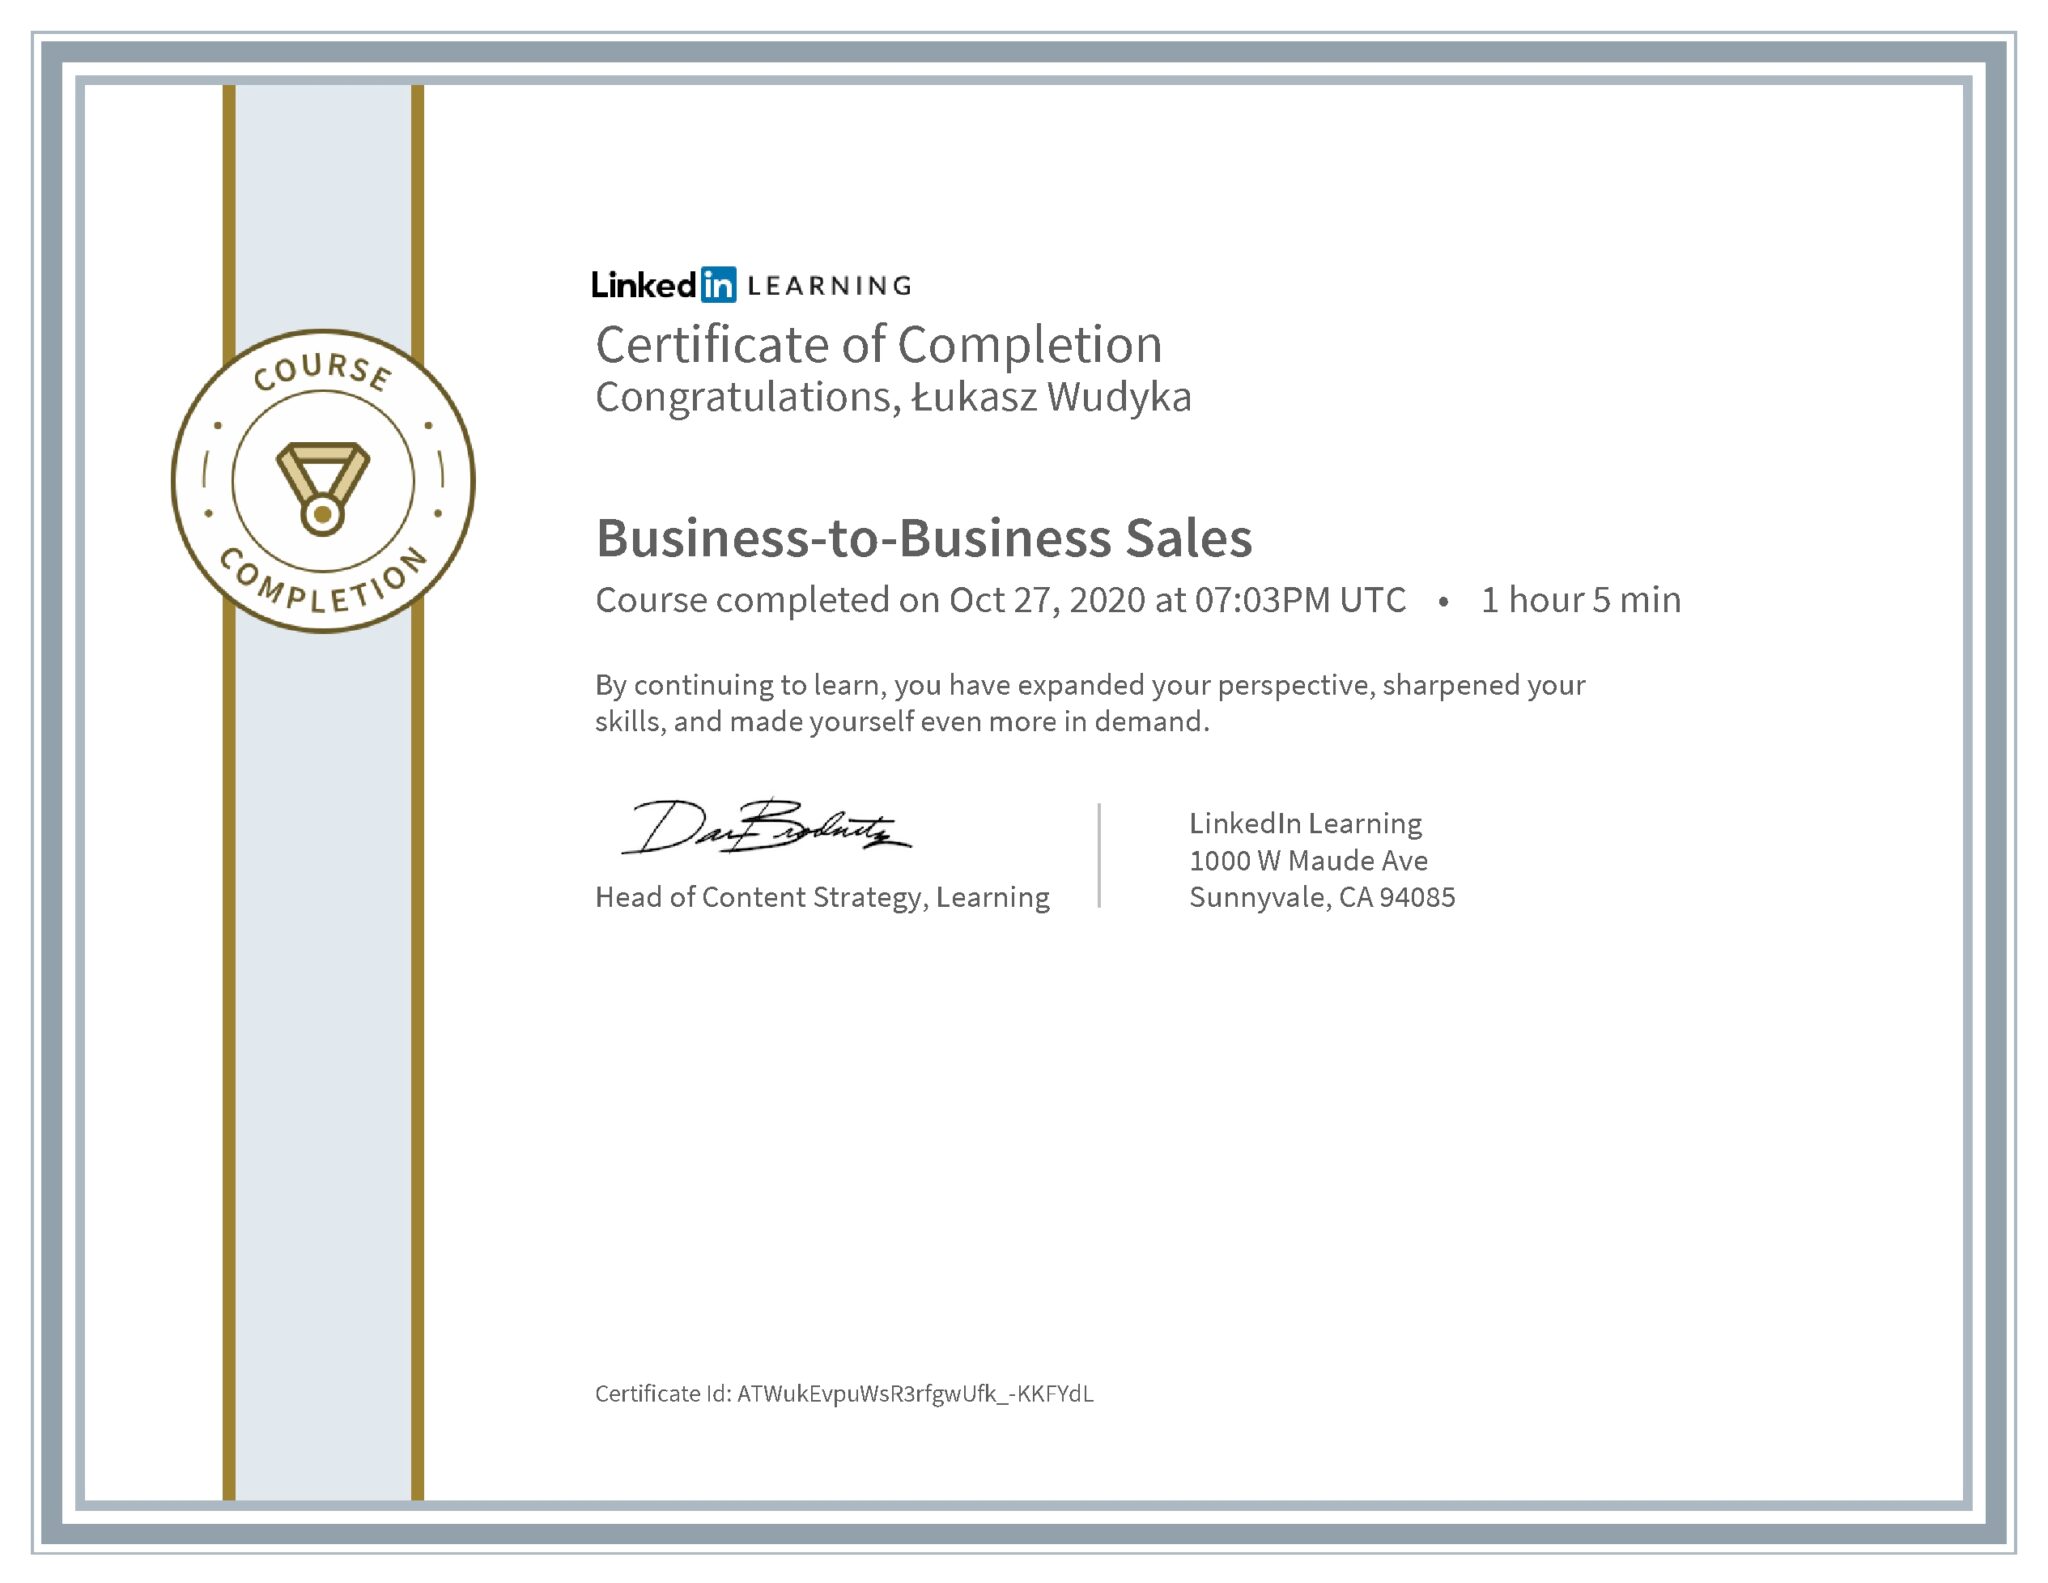 Łukasz Wudyka certyfikat LinkedIn Business-to-Business Sales